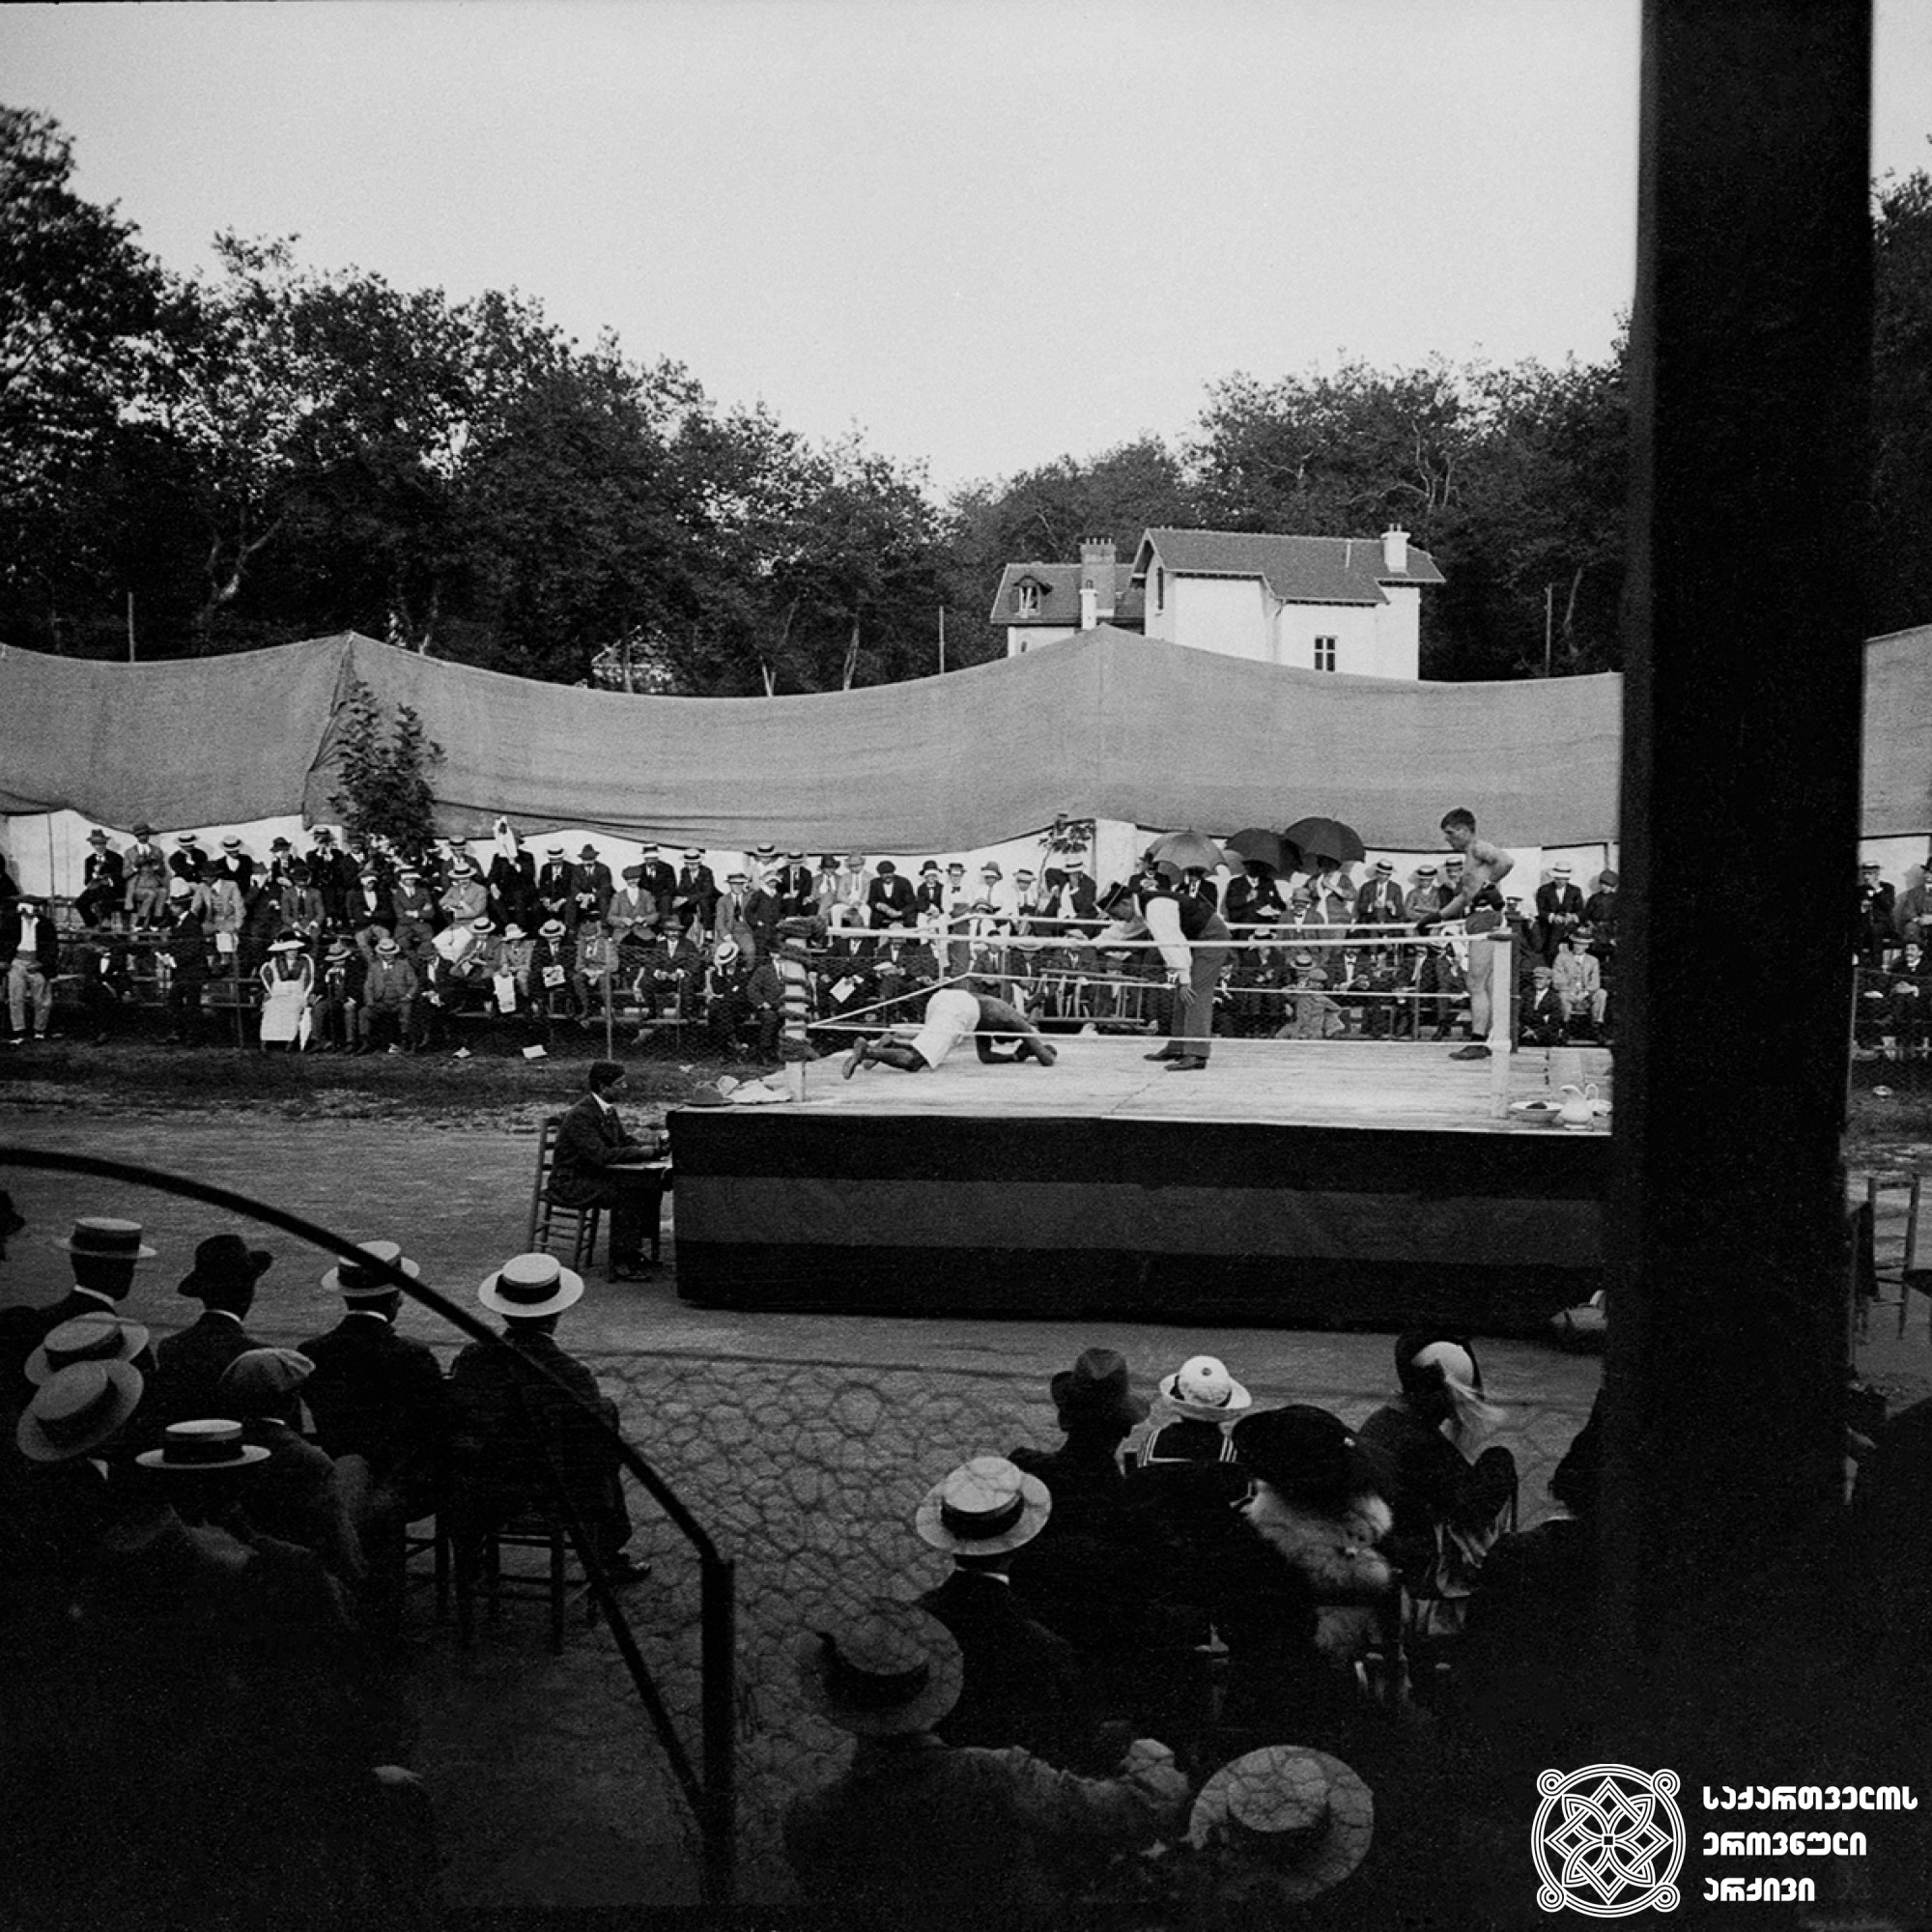 შეჯიბრი კრივში, ბიარიცი, საფრანგეთი <br>
1912 წელი <br>
გიგლო ყარალაშვილის კოლექცია <br>  

Competition in boxing, Biarritz, France <br>
1912 <br>
Giglo Karalashvili collection